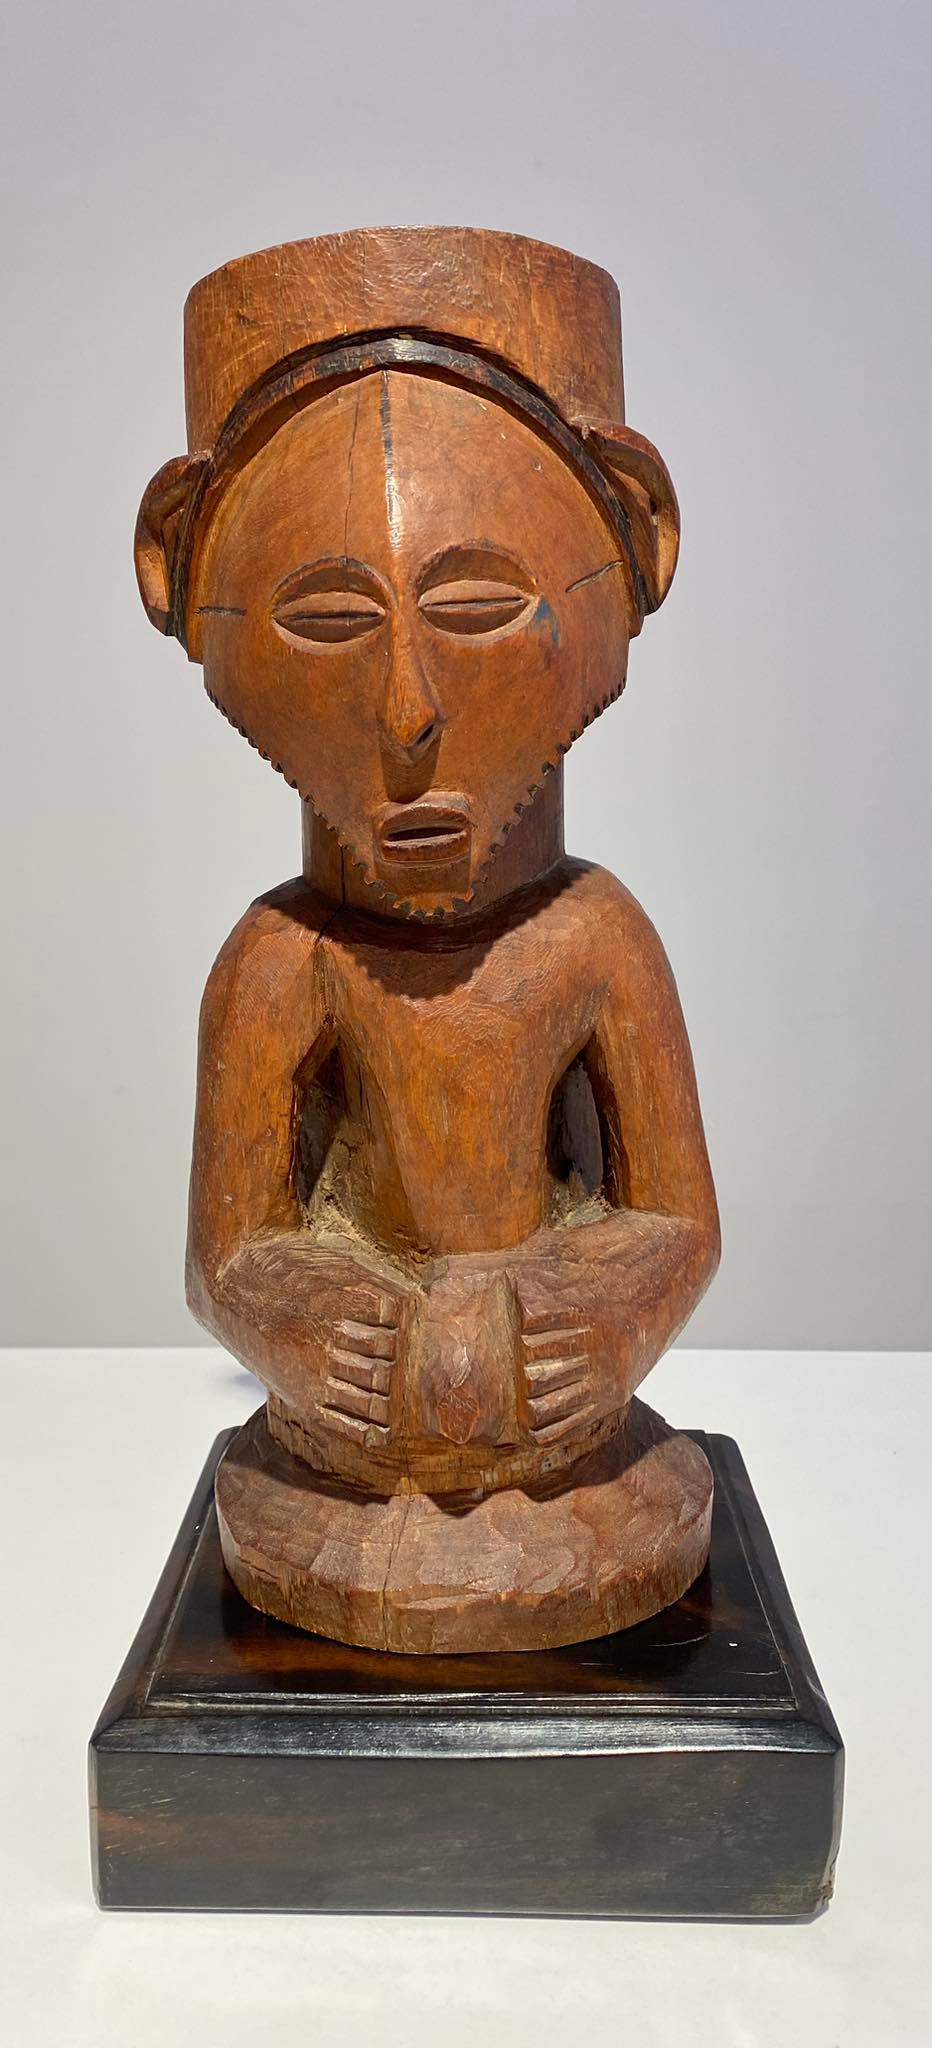 Schön geschnitzte Kusu / Kongo-Statue mit schönem Gesicht / mandelförmigen Augen und dreieckigem Gesicht mit Bart. Top des Kopfes ist ein großes Loch, um die mächtige Statue charche und hat Patina von Alter und Gebrauch. 
Bei dieser Statue, die zur